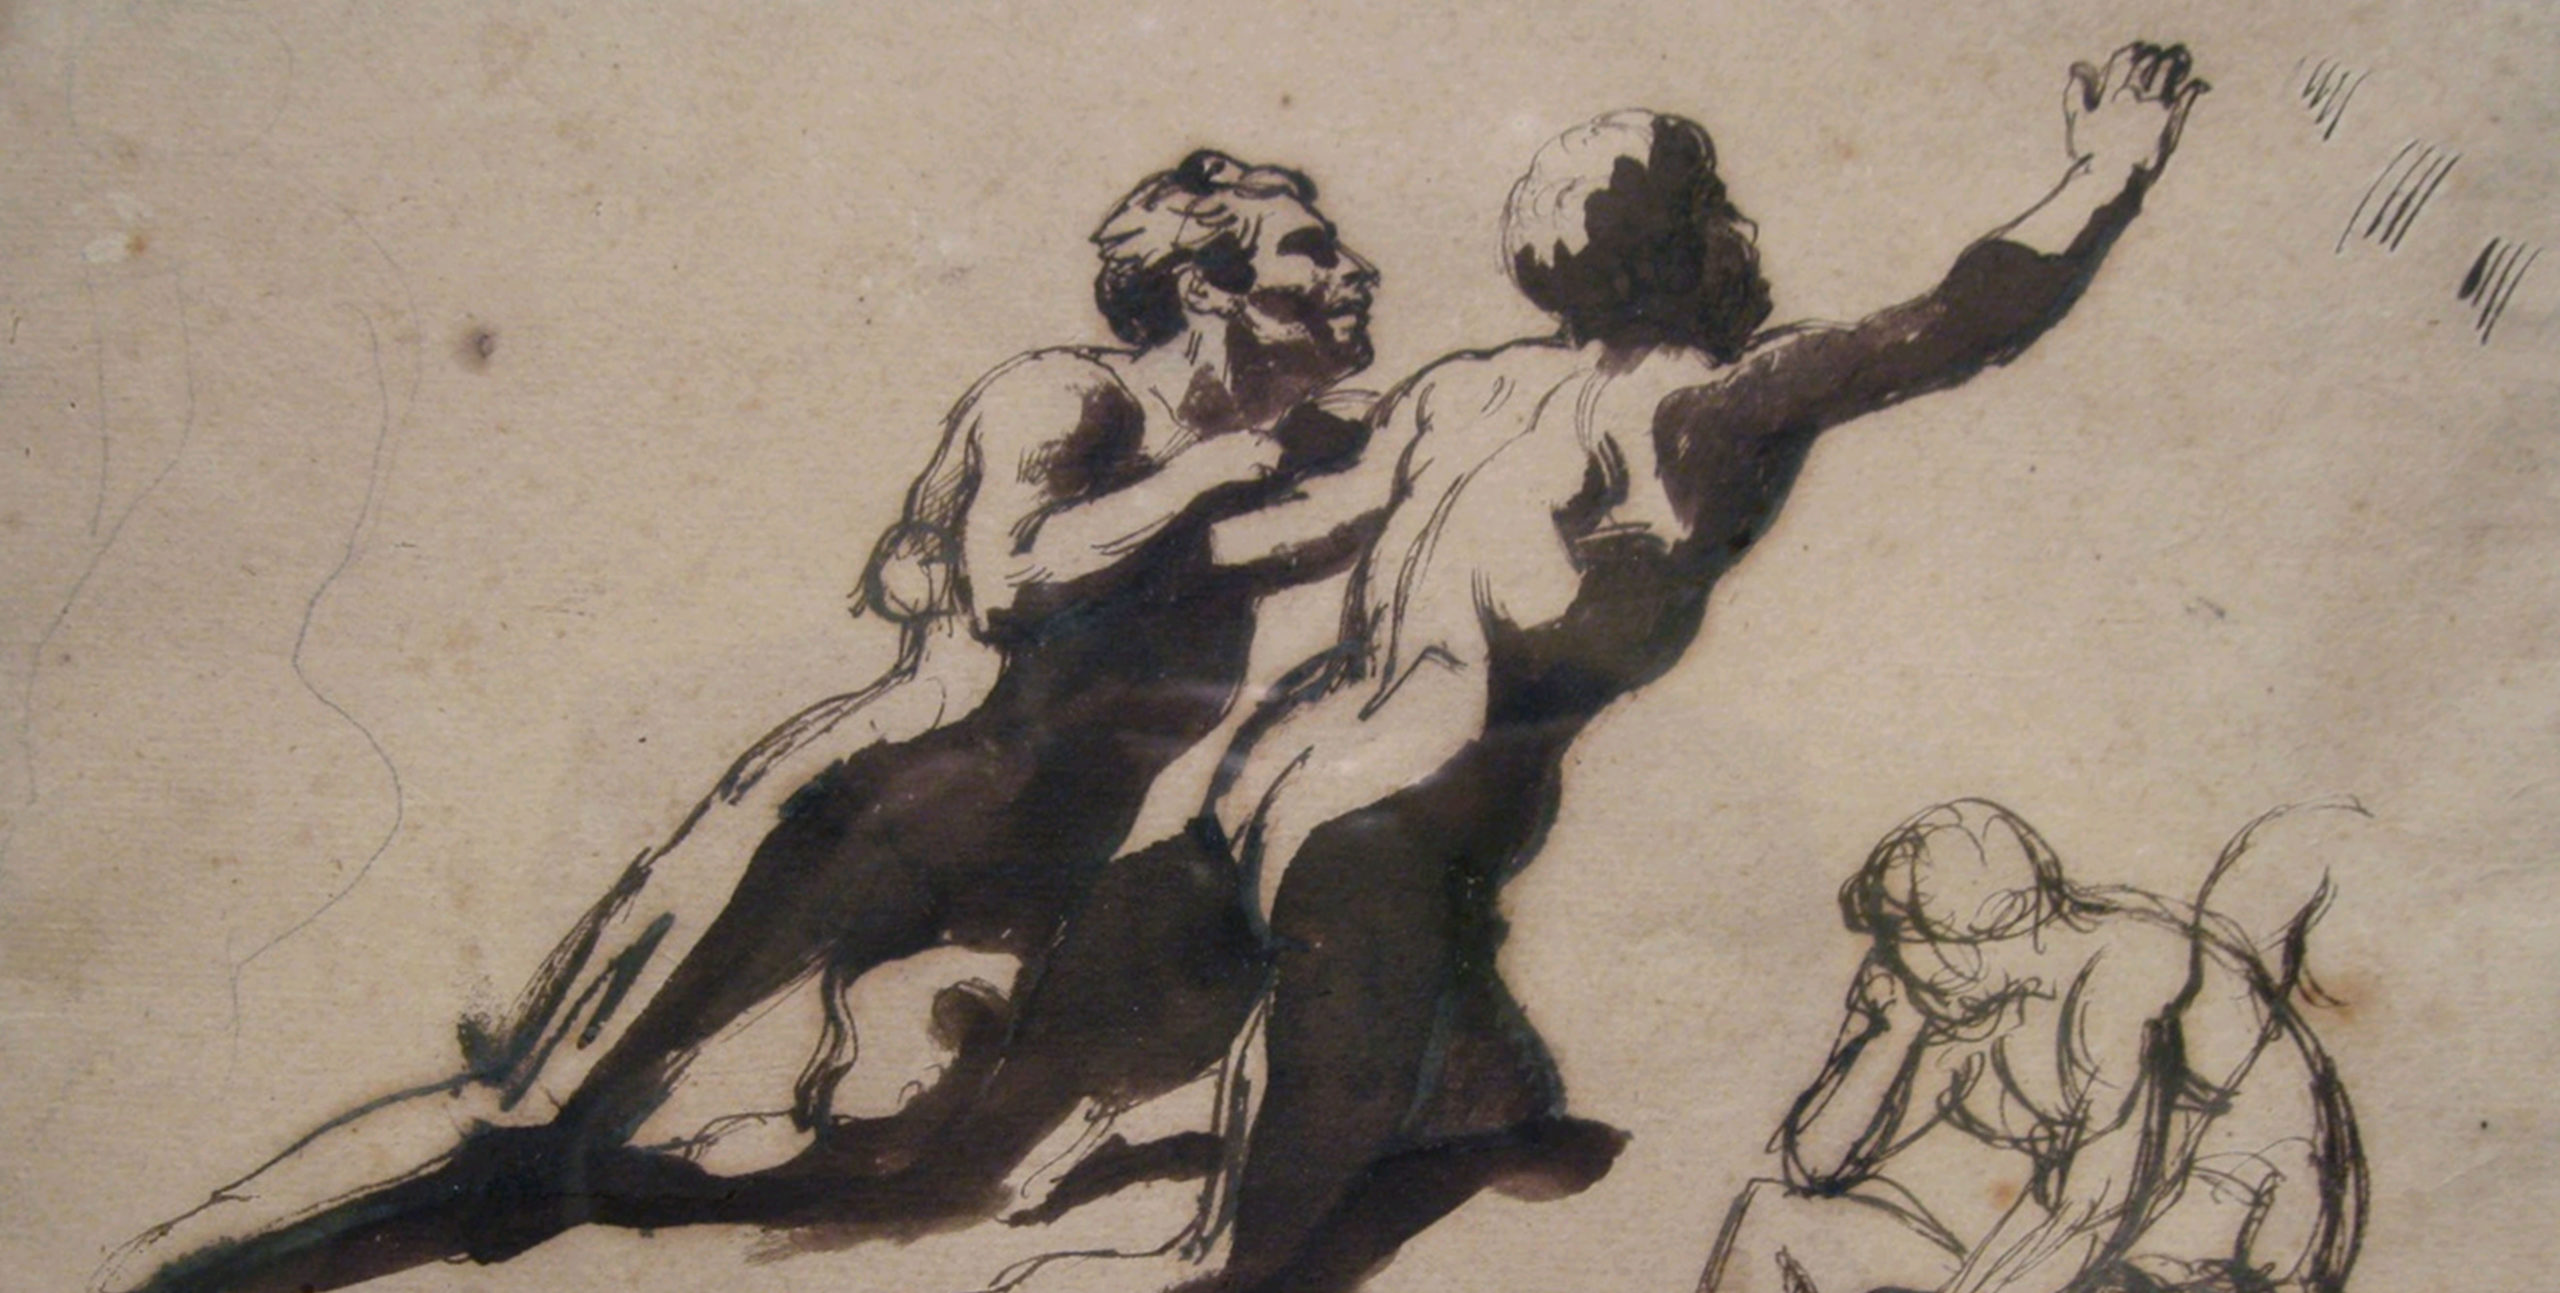 https://ufe-experts.fr/wp-content/uploads/2019/08/5-Géricault-Etude-pour-le-Radeau-de-la-Méduse-copie-scaled.jpg